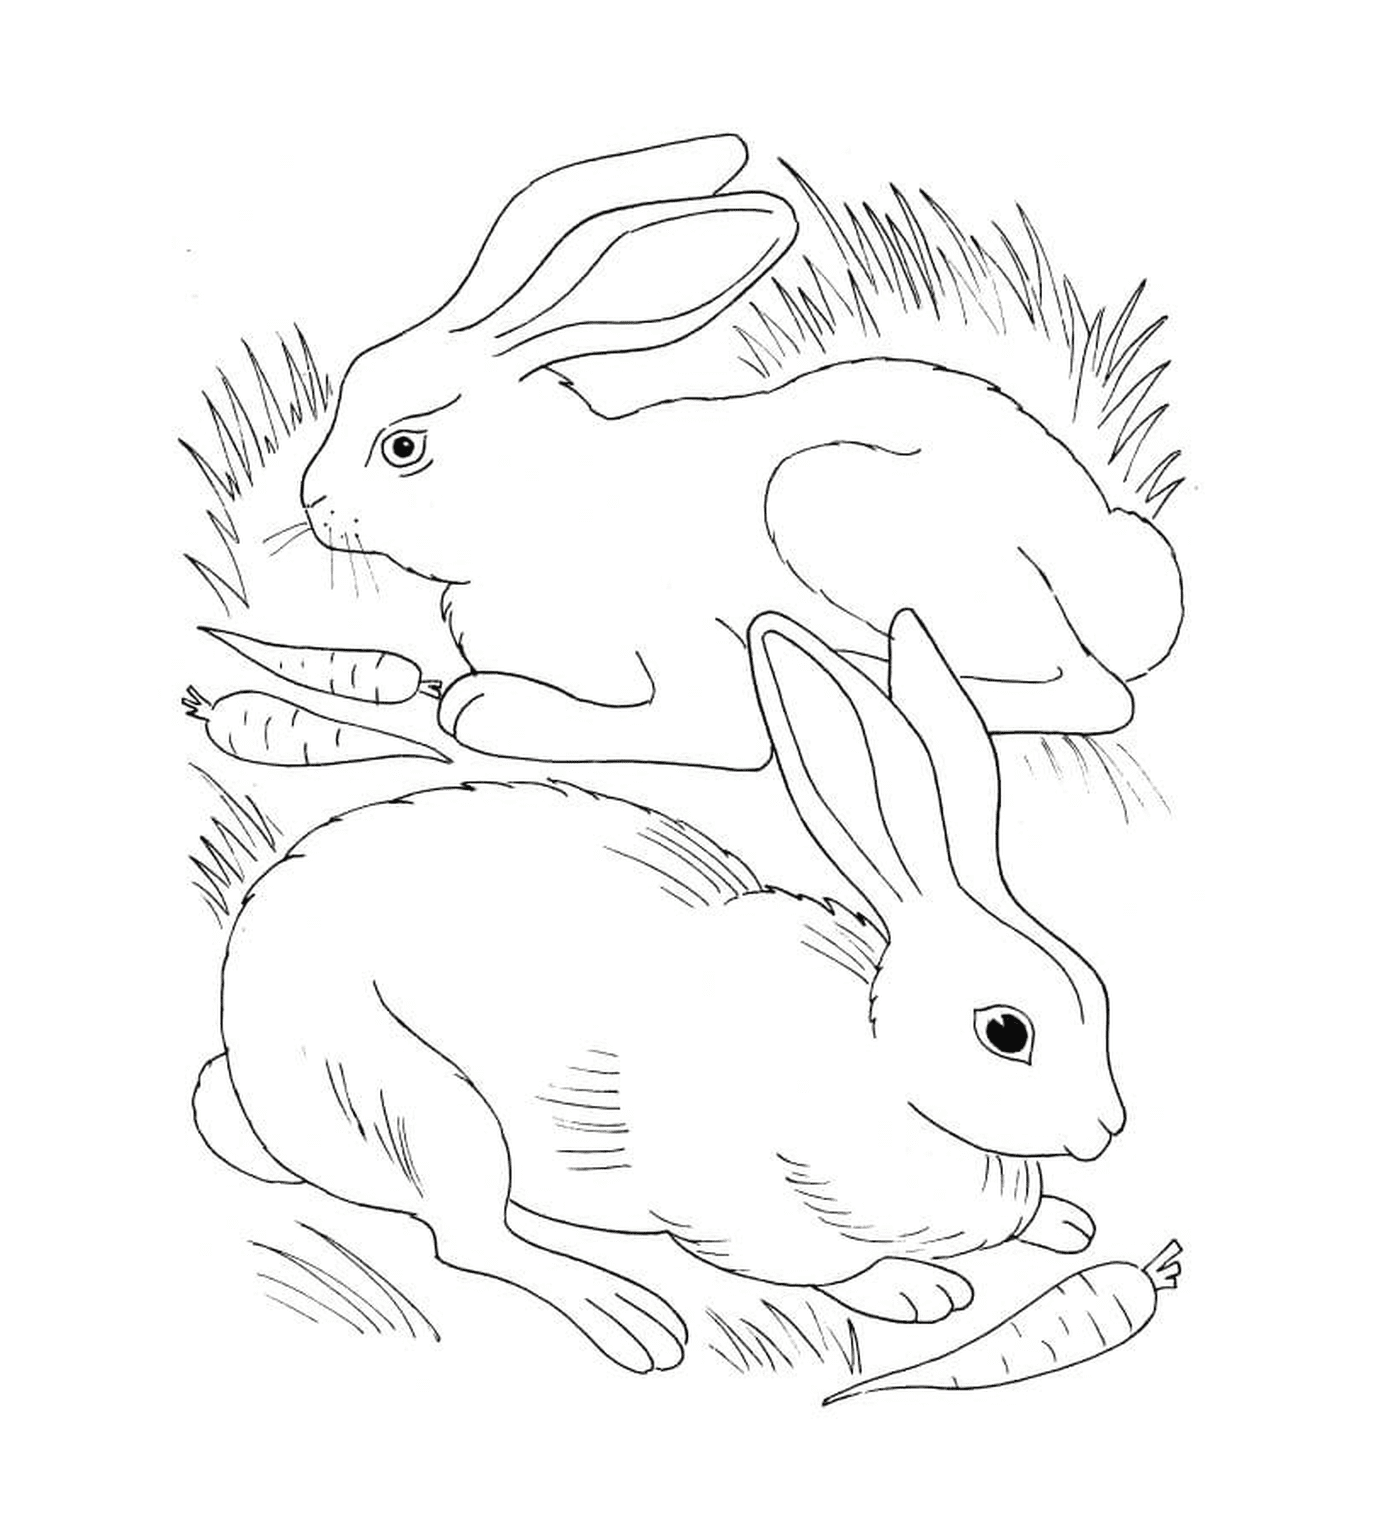  Coelho e coelho comendo cenouras 